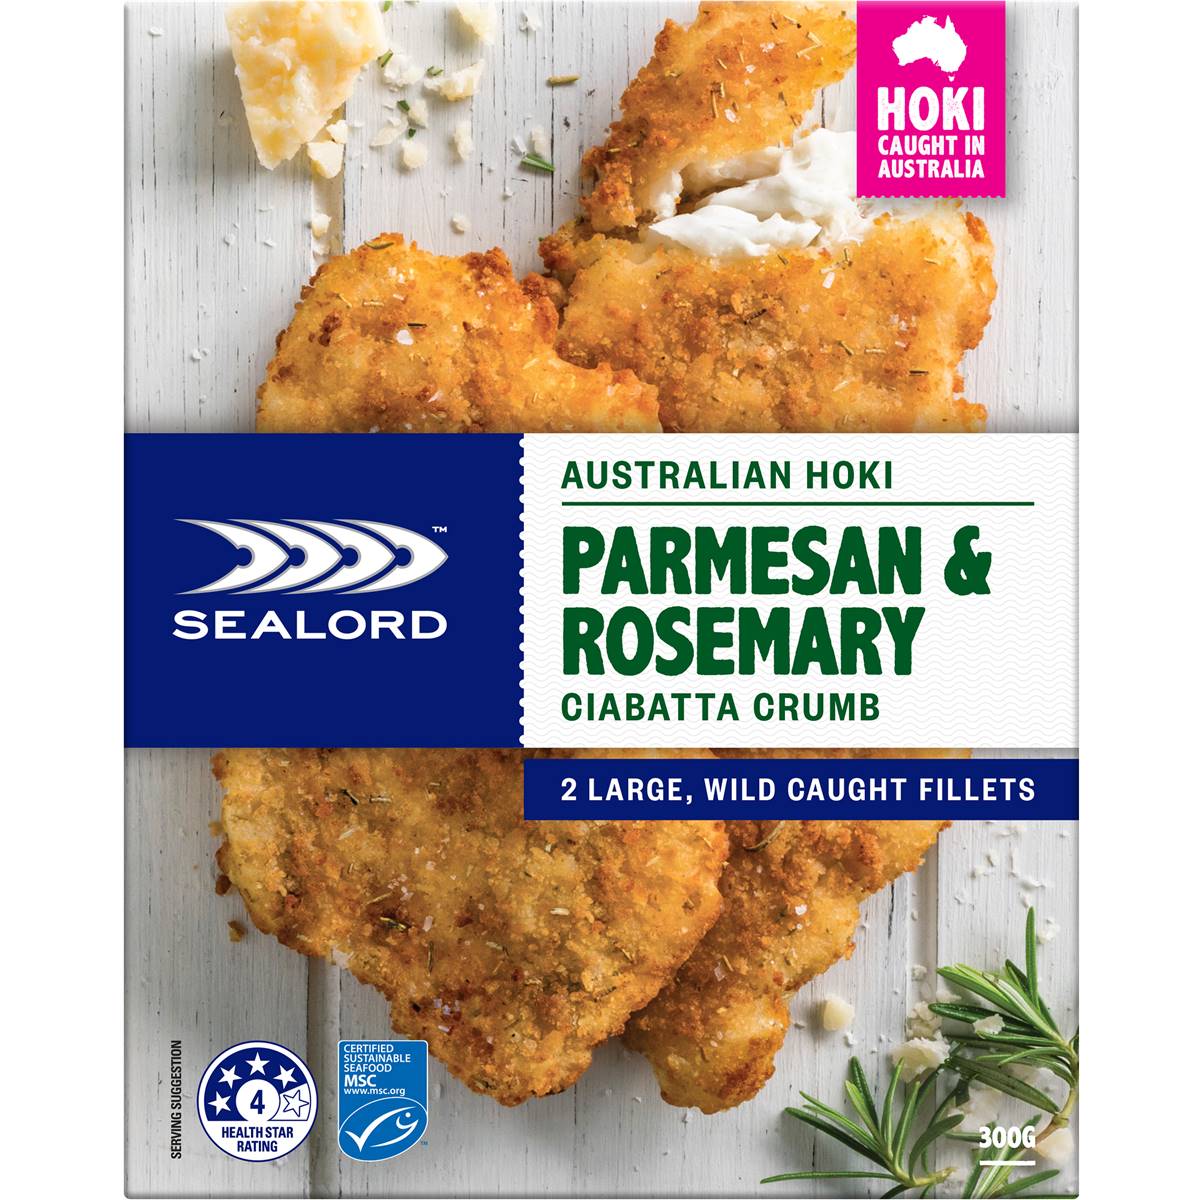 Calories in Sealord Australian Hoki Parmesan & Rosemary Ciabatta Crumb